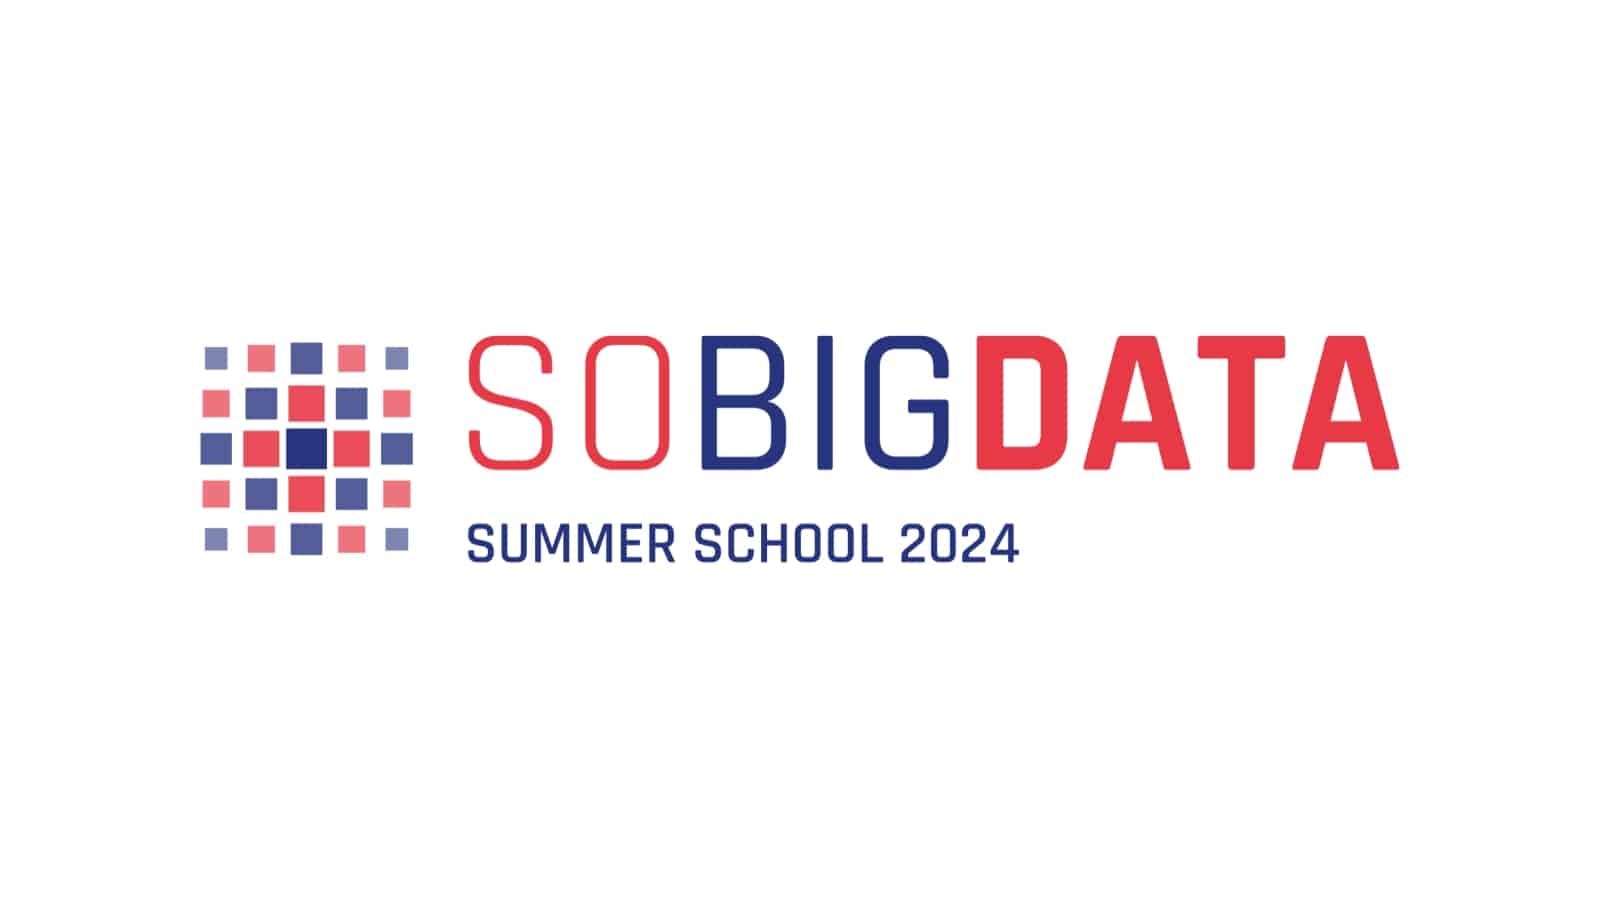 SoBigData Summer School 2024